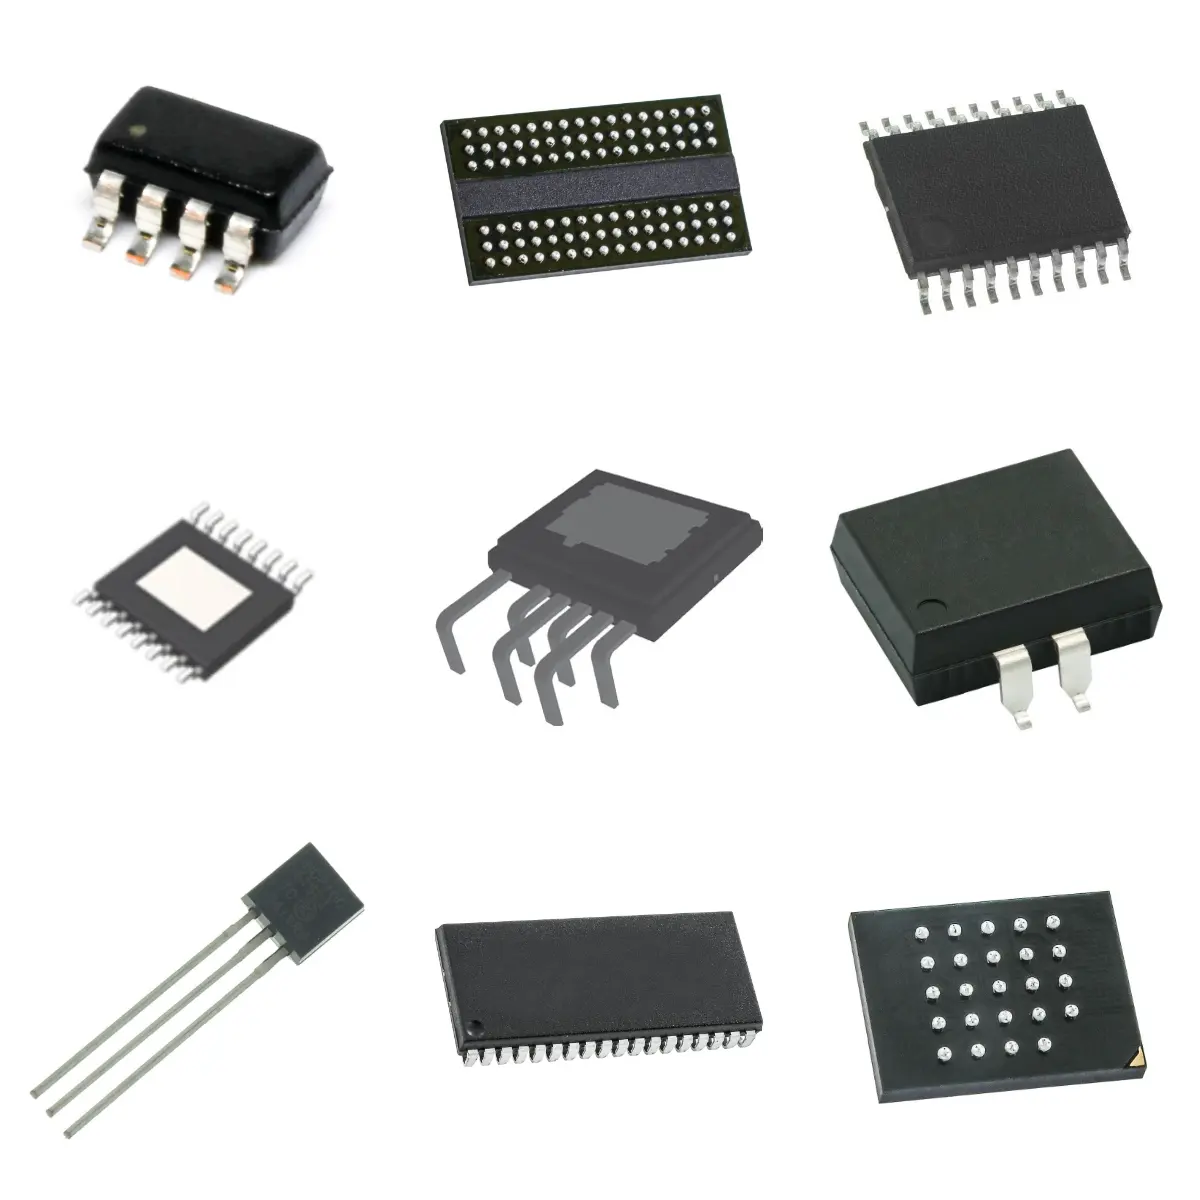 Chip IC sirkuit terintegrasi komponen elektronik toko komponen elektronik XC4VFX60-10FF672C